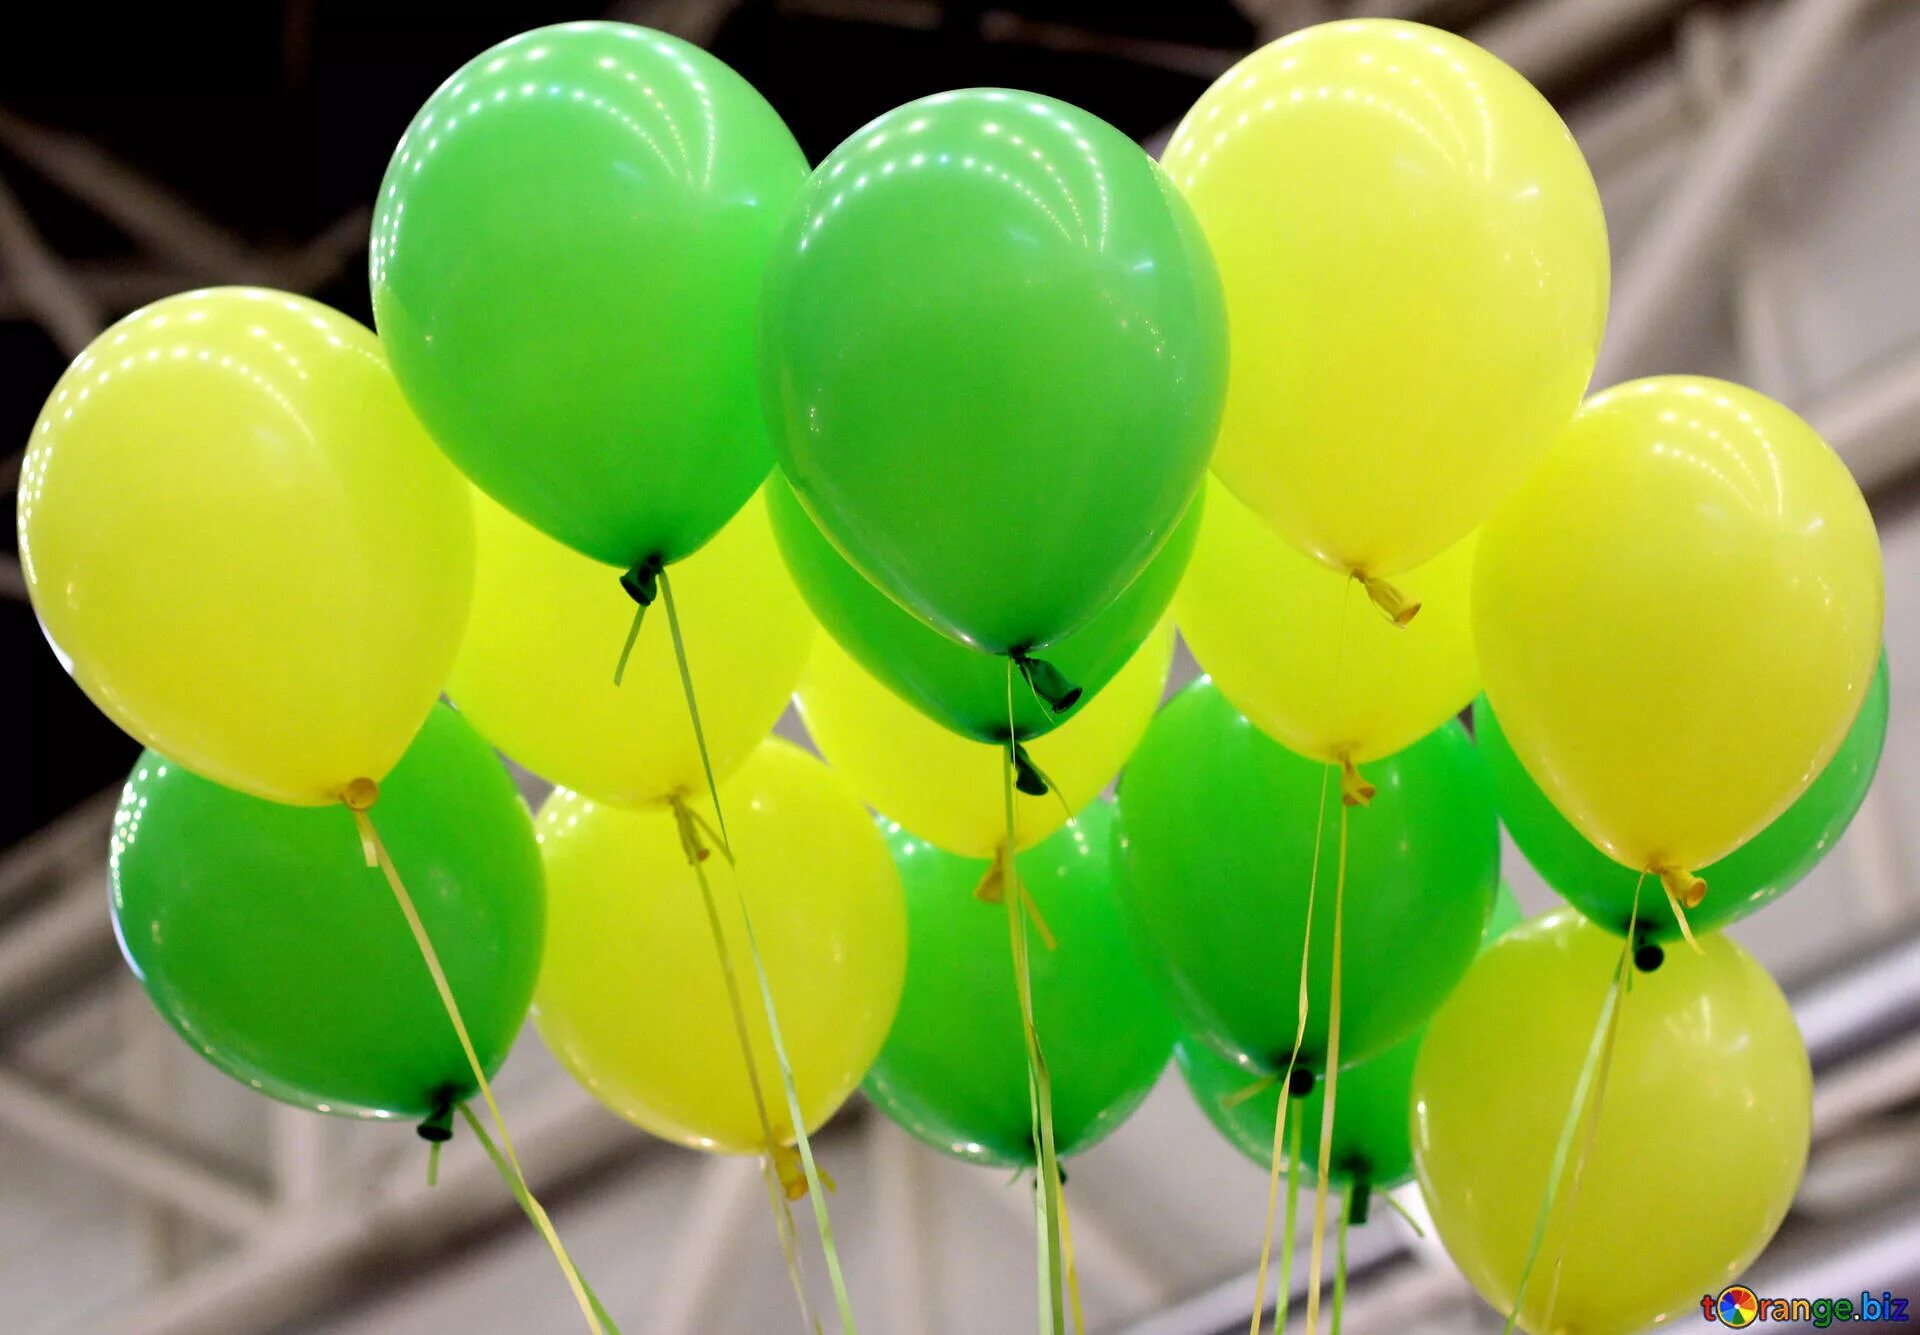 Шарики воздушные послушные. Воздушный шарик. Яркие воздушные шары. Желтые воздушные шары. Воздушные шары в зеленых тонах.